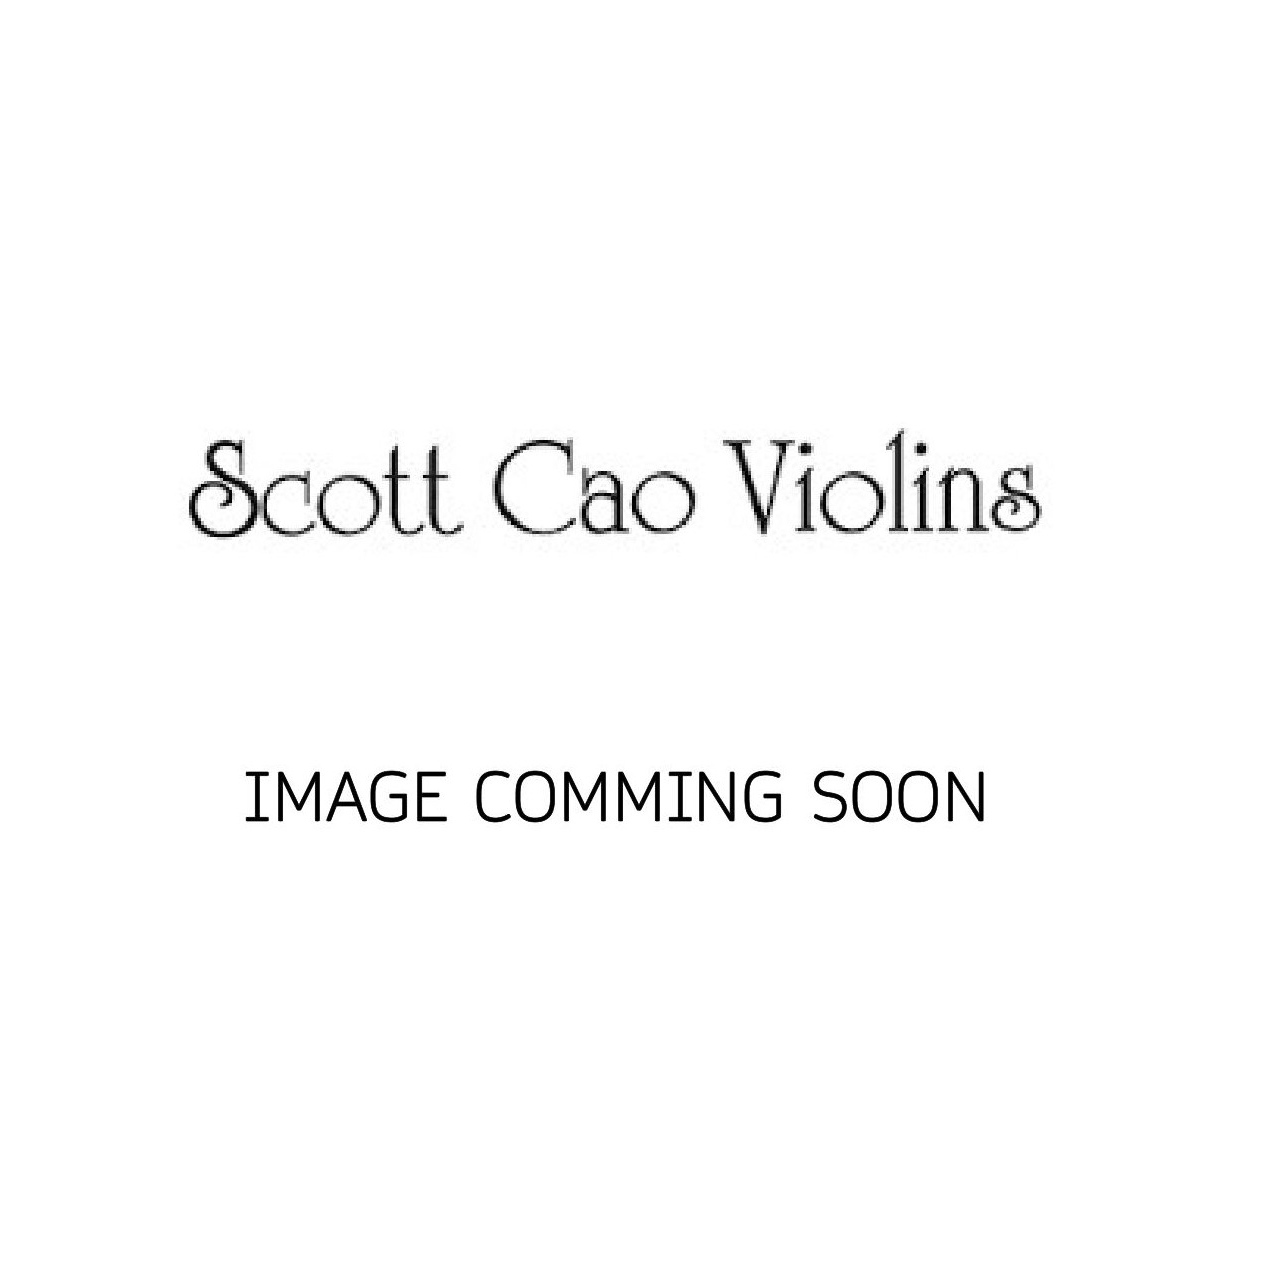 Scott Cao Cello 4/4 Rocca EU/EU